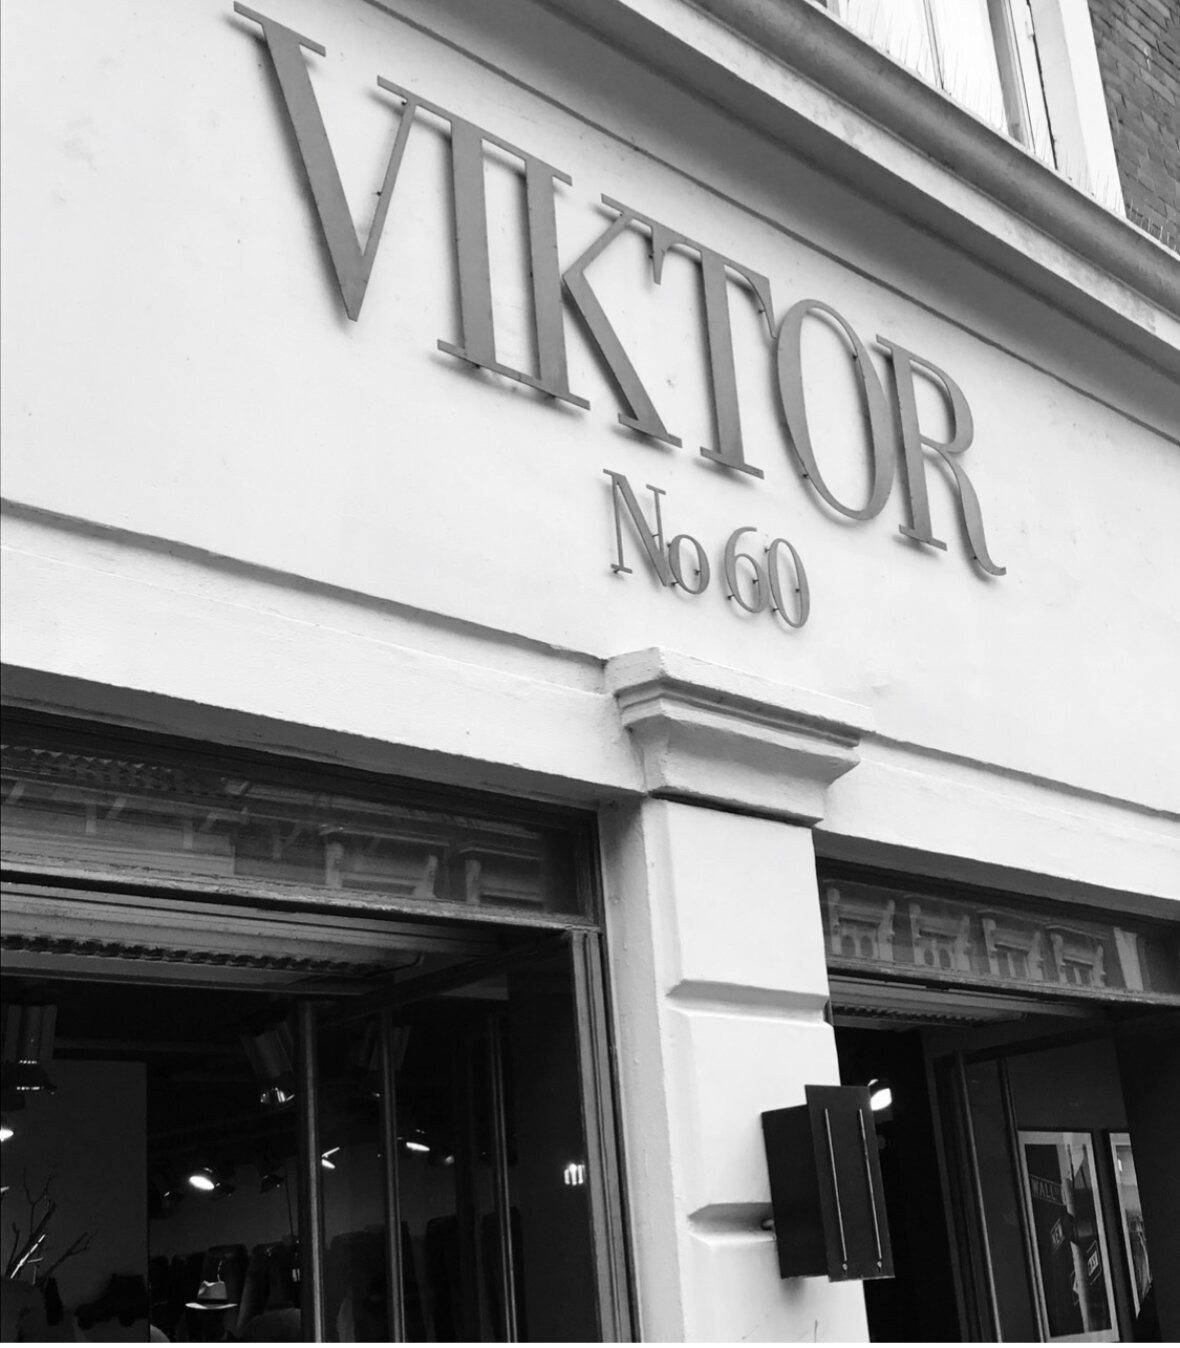 Viktor No60 -